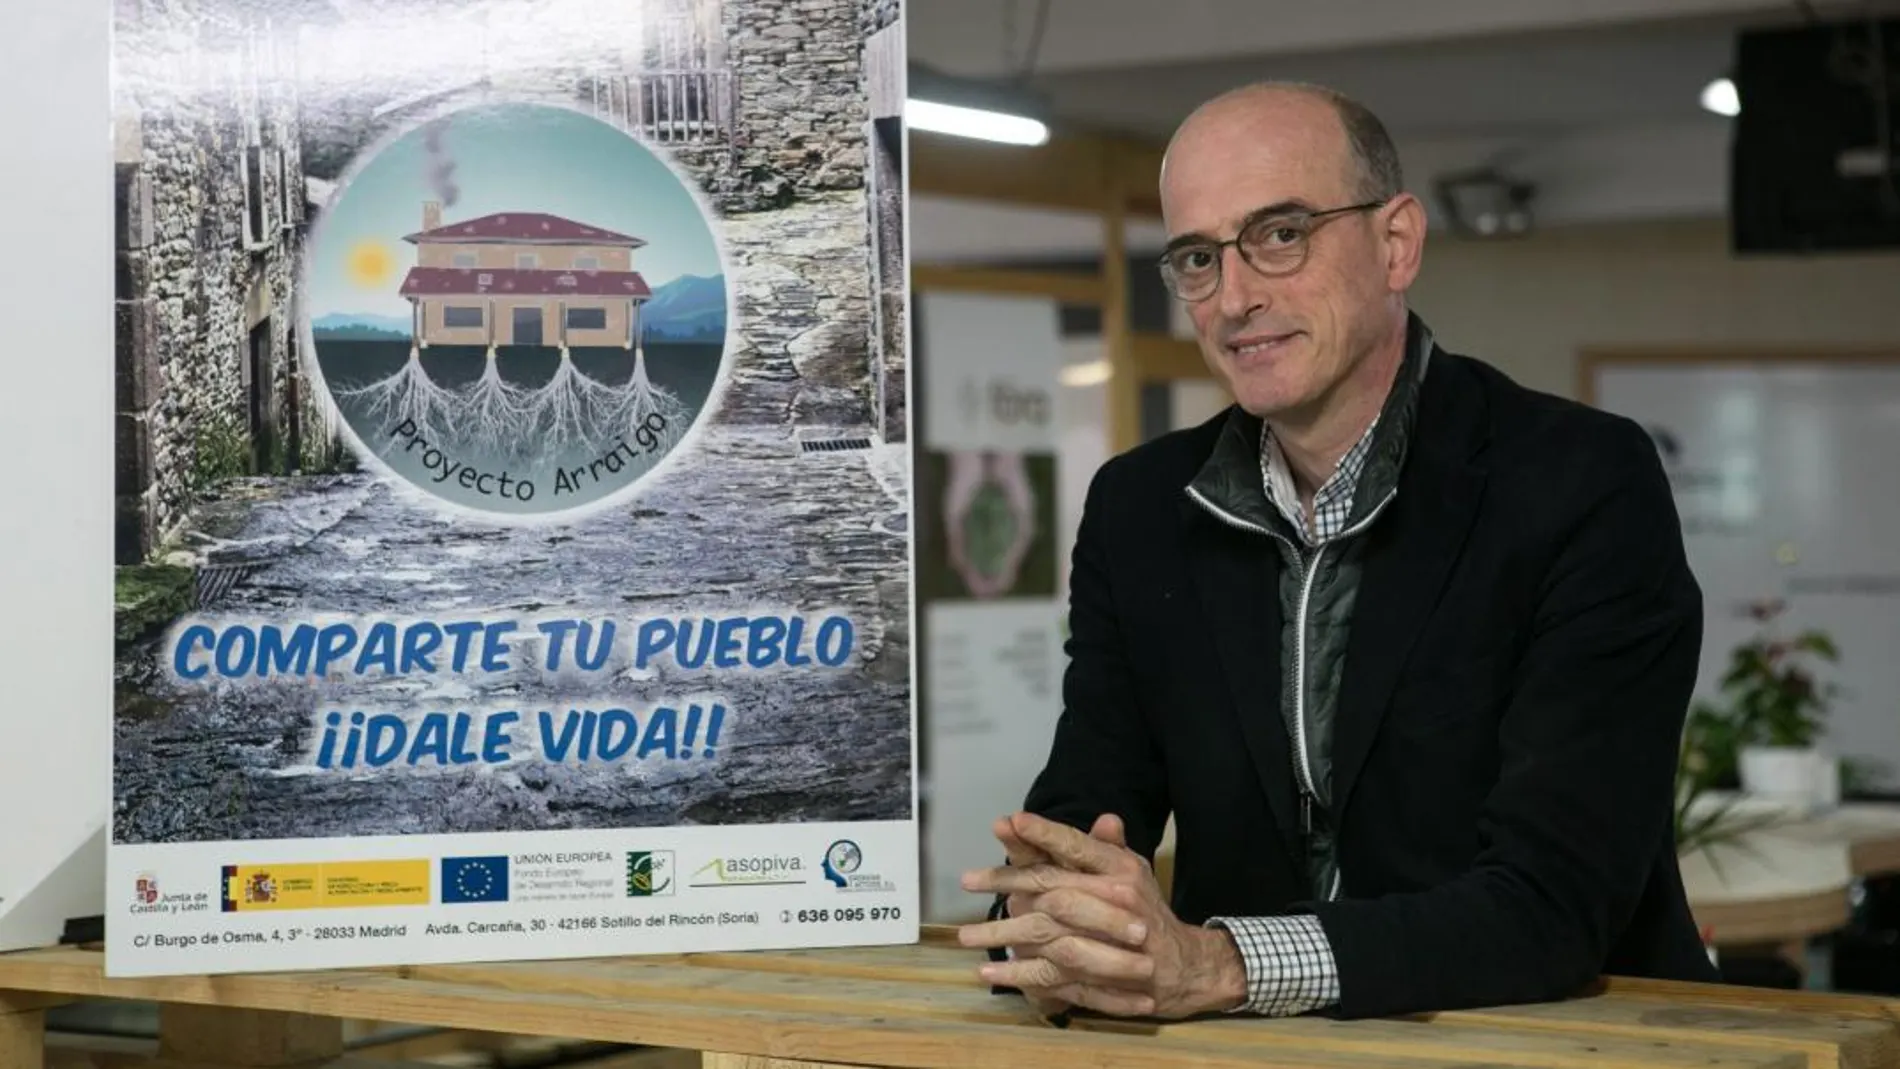 Enrique Martínez, uno de los promotores de la iniciativa, junto a un cartel promocional con el que anima a alquilar o vender viviendas para su uso como segunda residencia